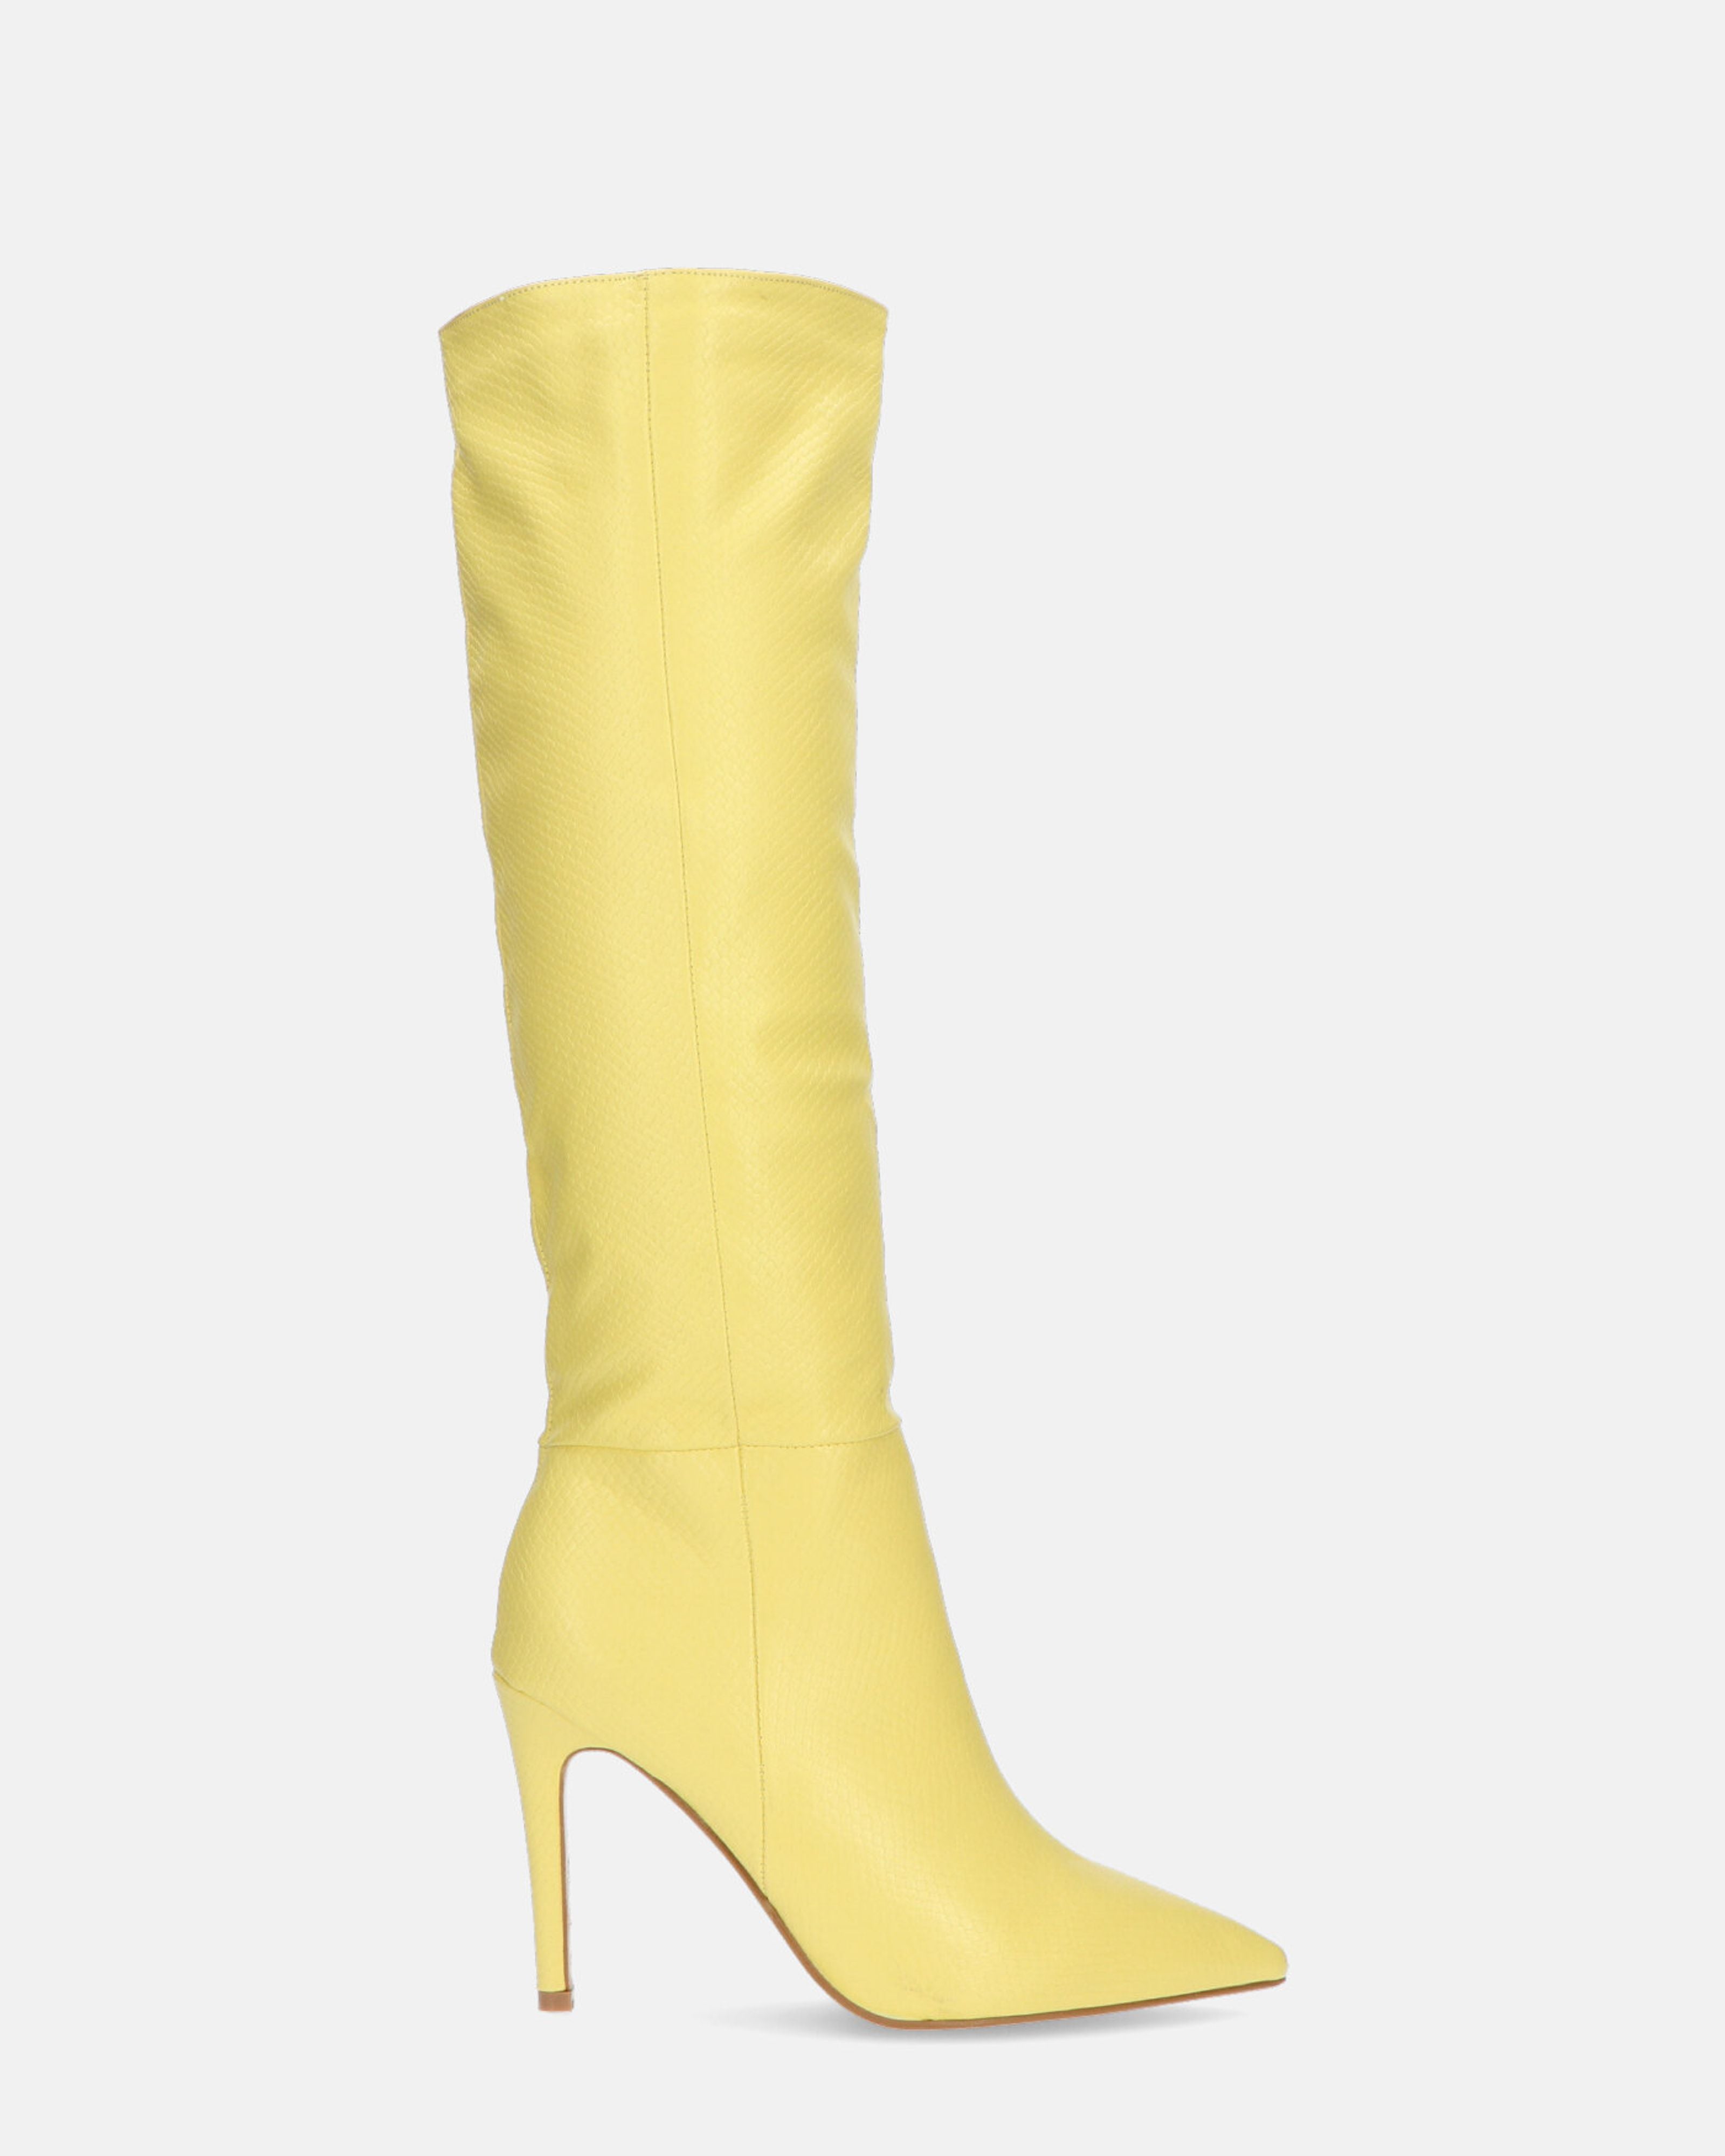  LOLY - bota de tacón de pitòn amarillo